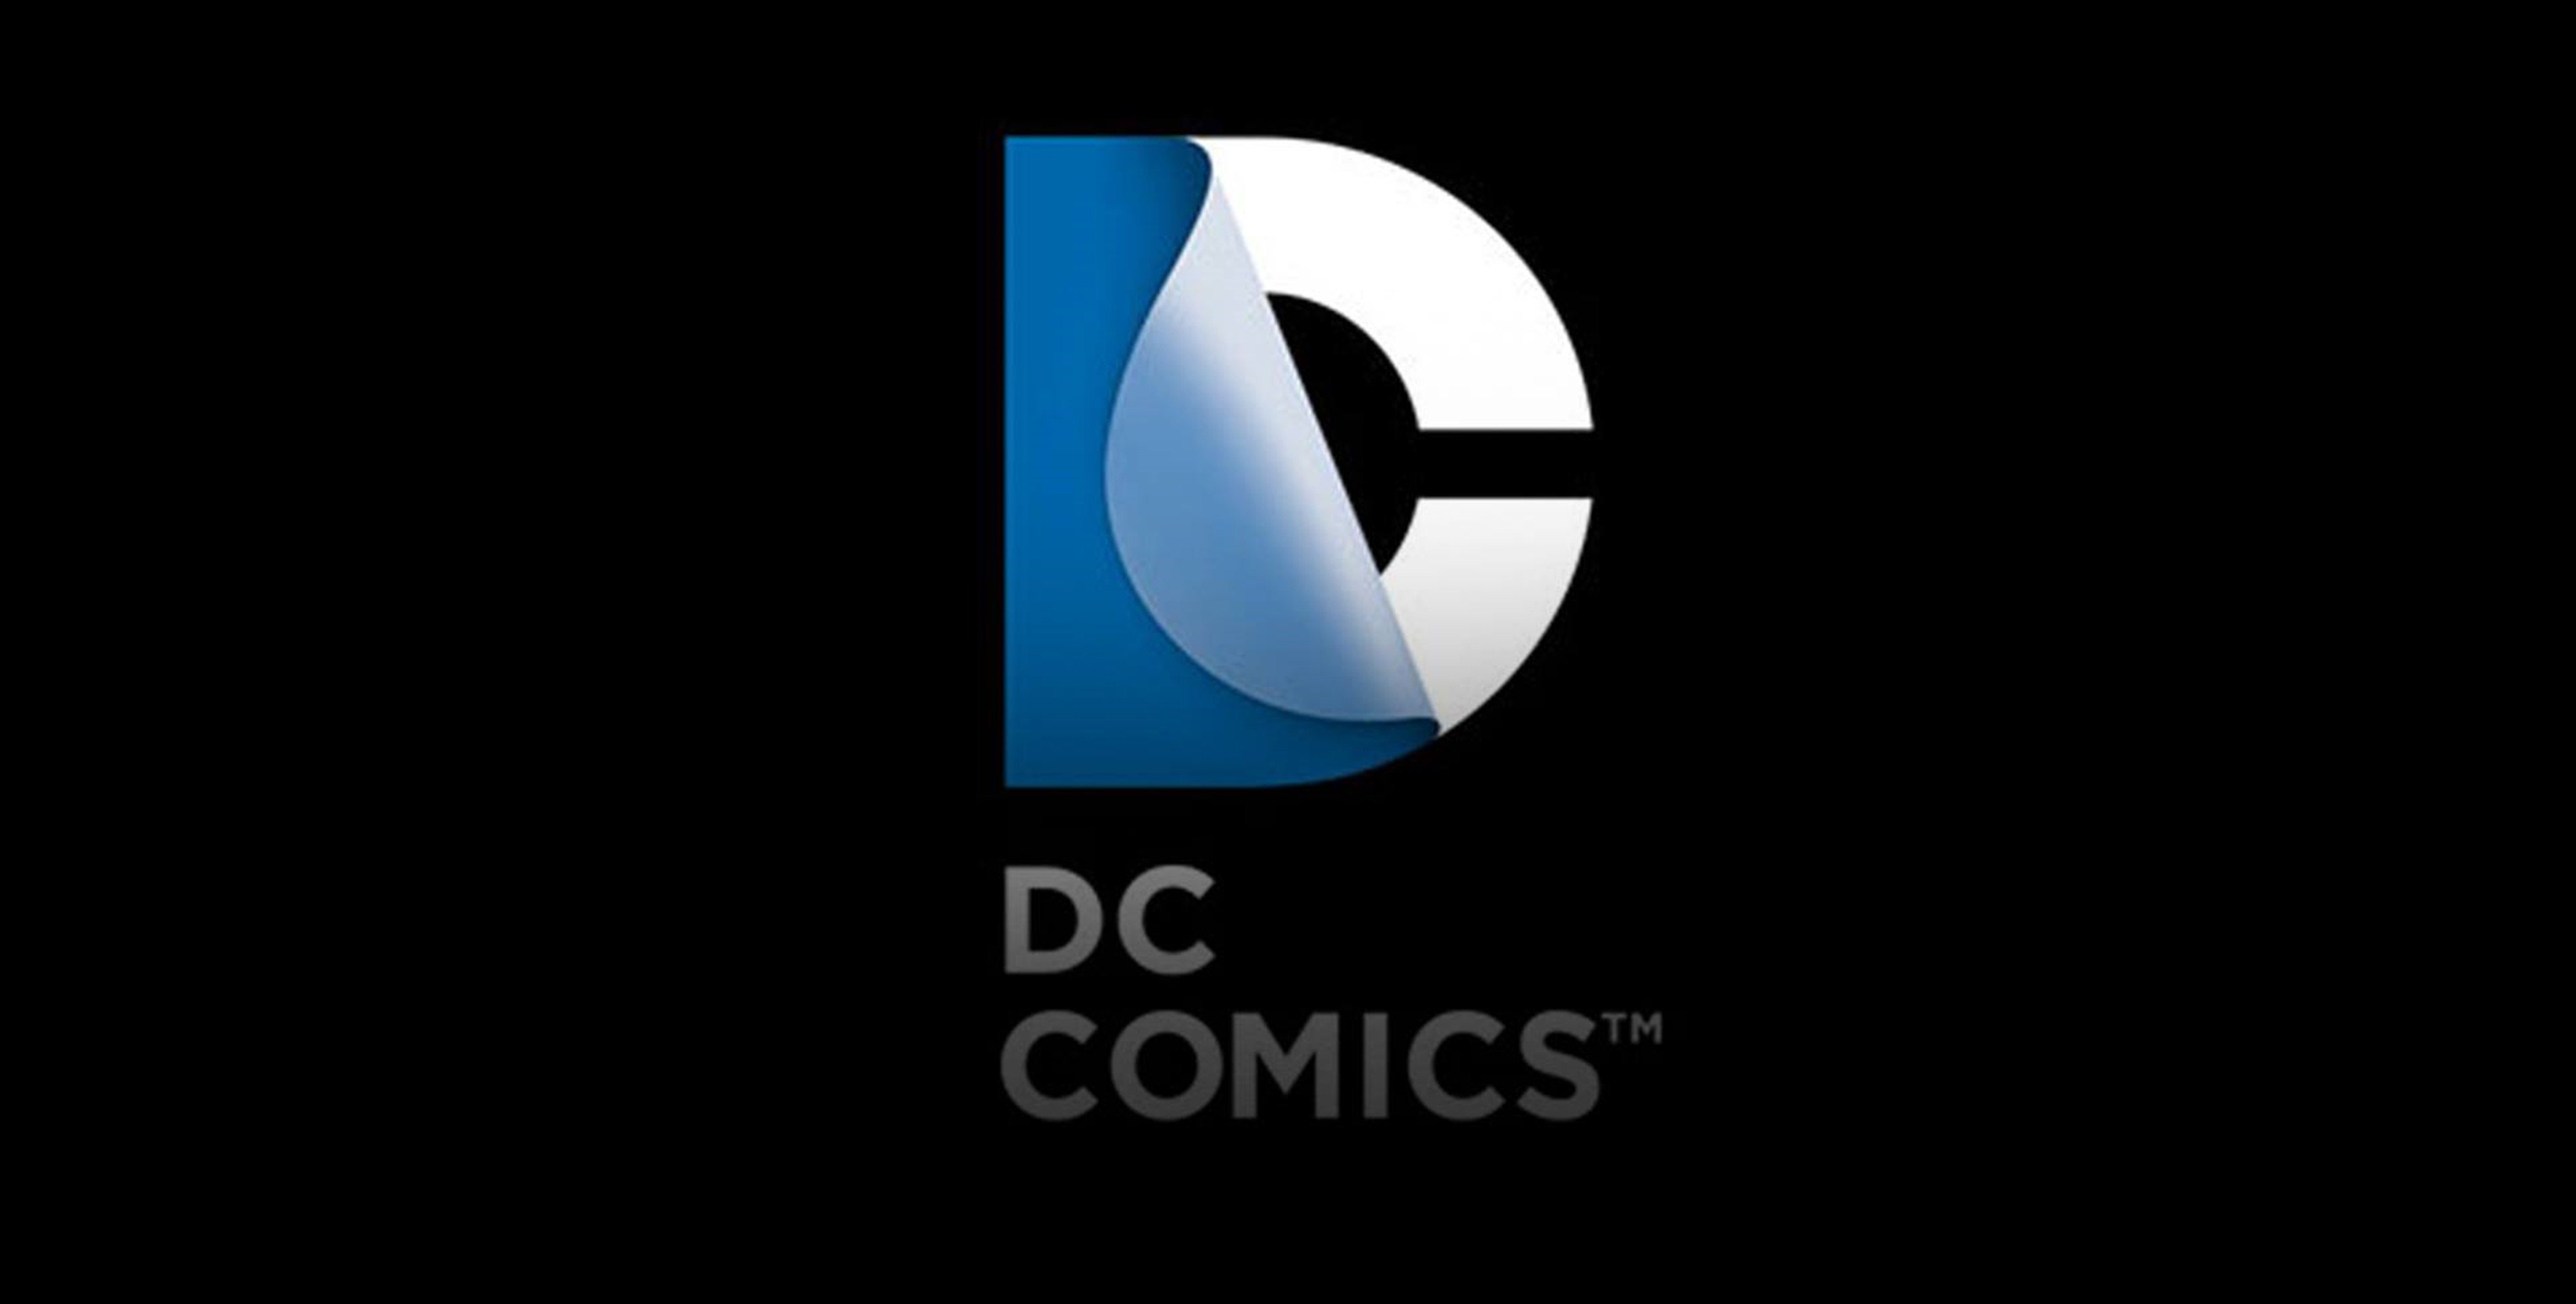 dc comics logo superheroes comics wallpaper background